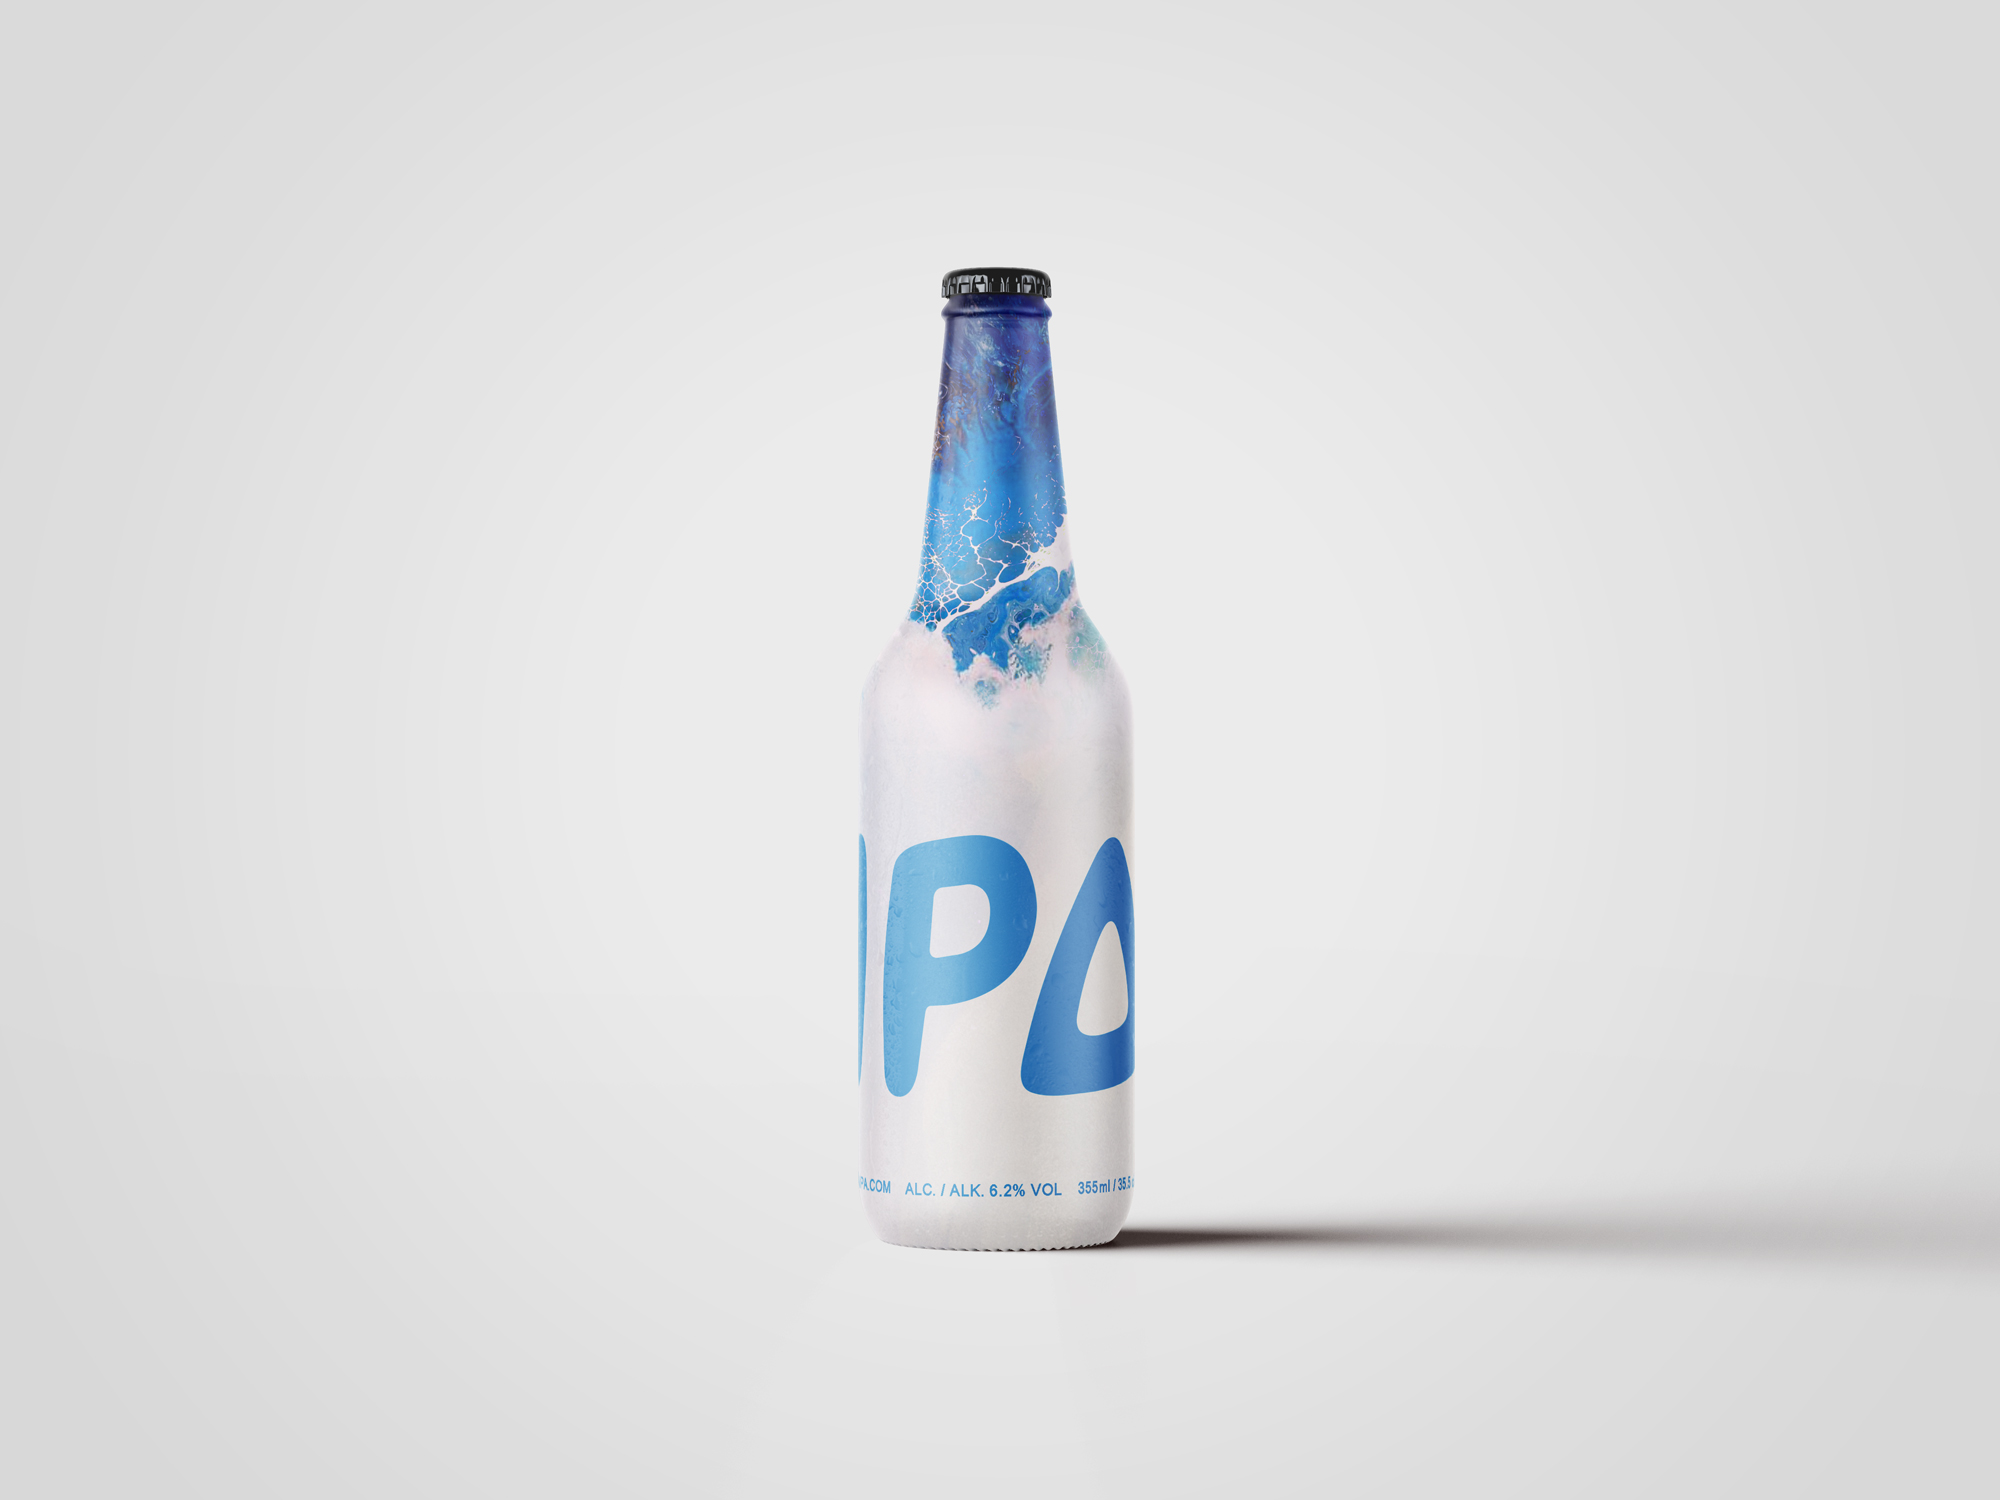 IPA beer bottle label design by Johan Wibrink